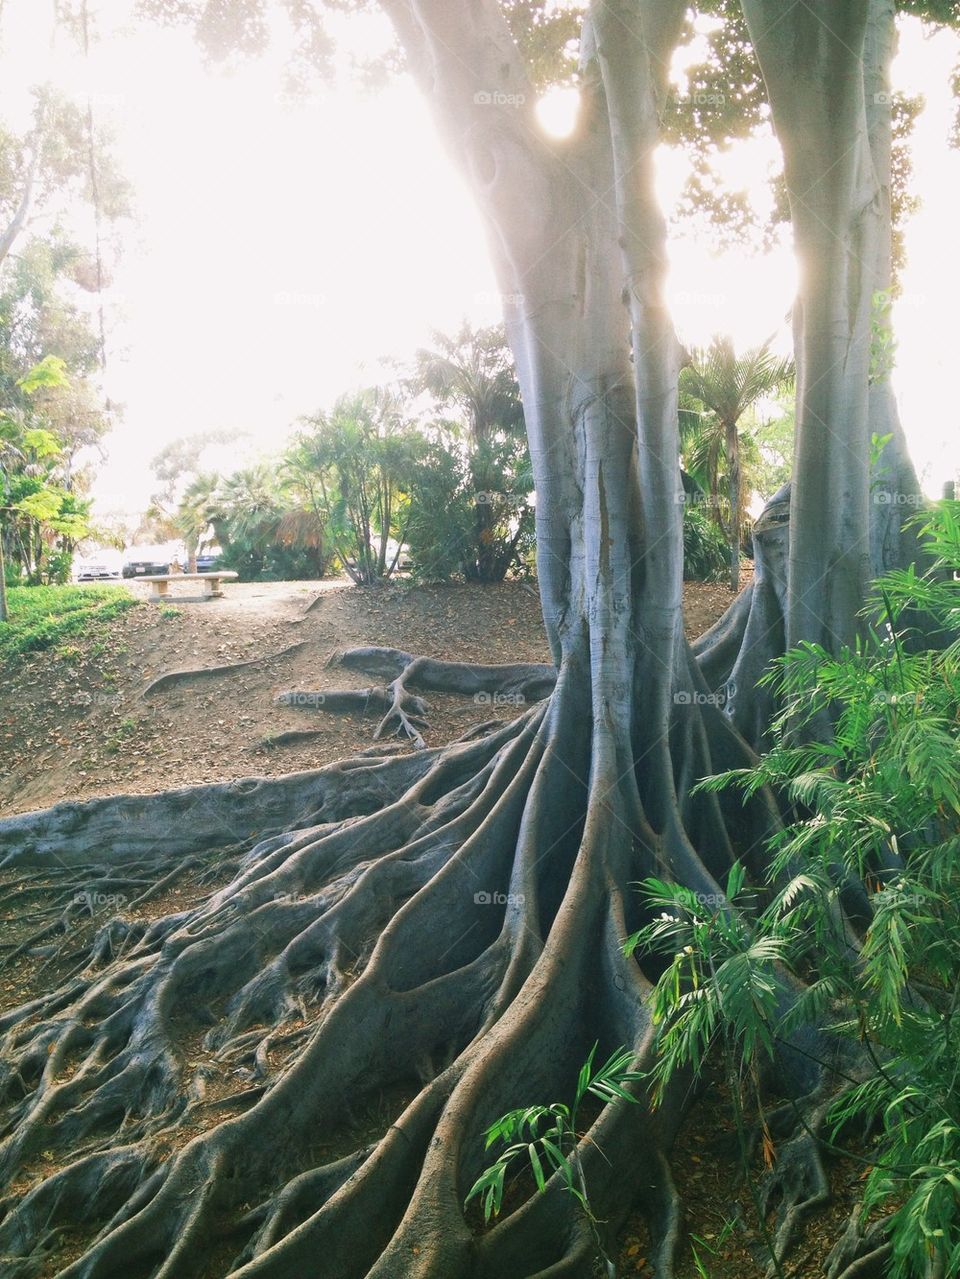 Trees of Balboa Park